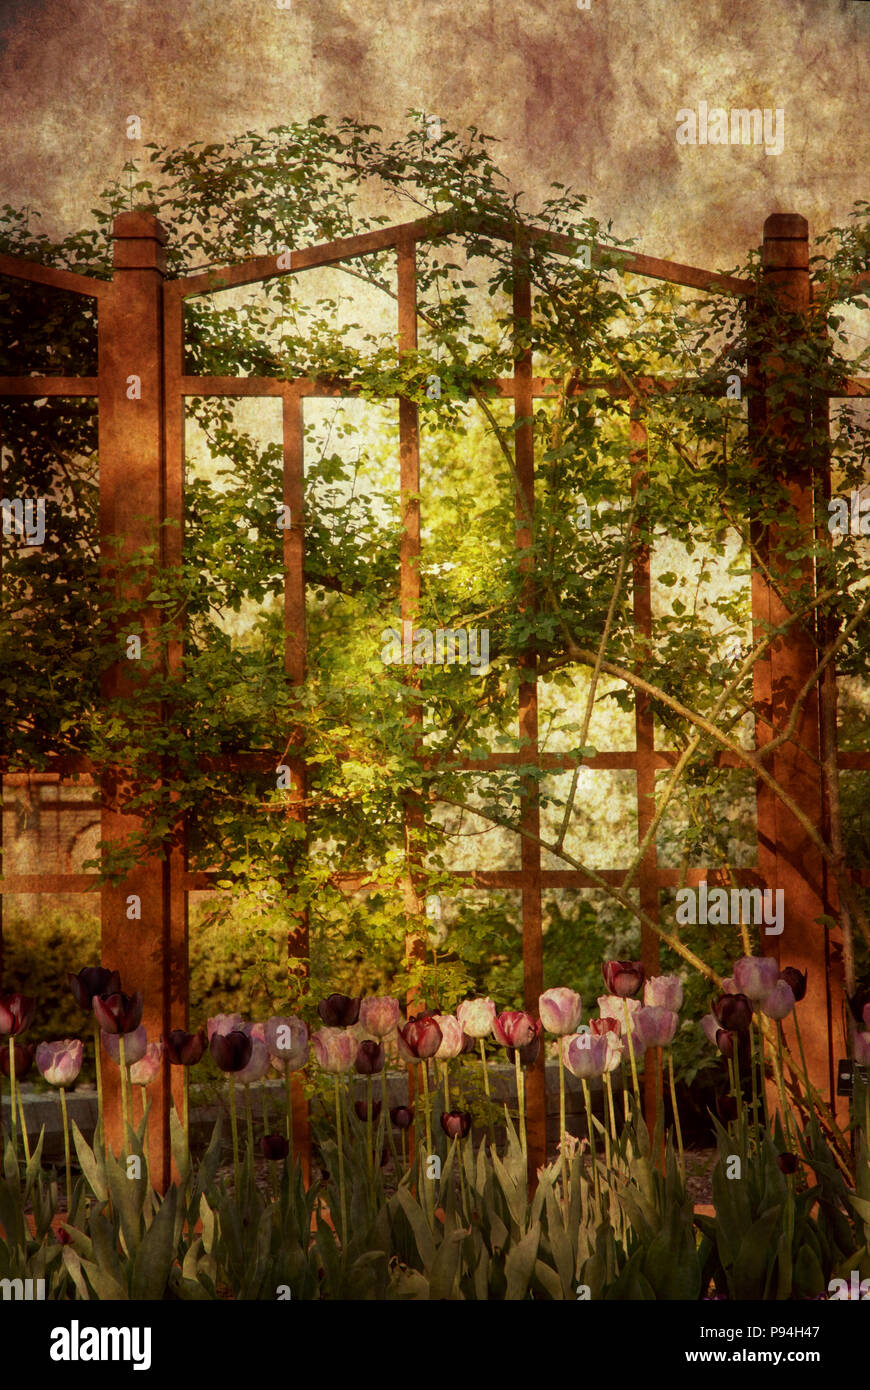 Im viktorianischen Stil oder Vintage, romantischen Garten Hintergrund Szene mit hölzernen Zaun, Reben und Tulpen. Stockfoto